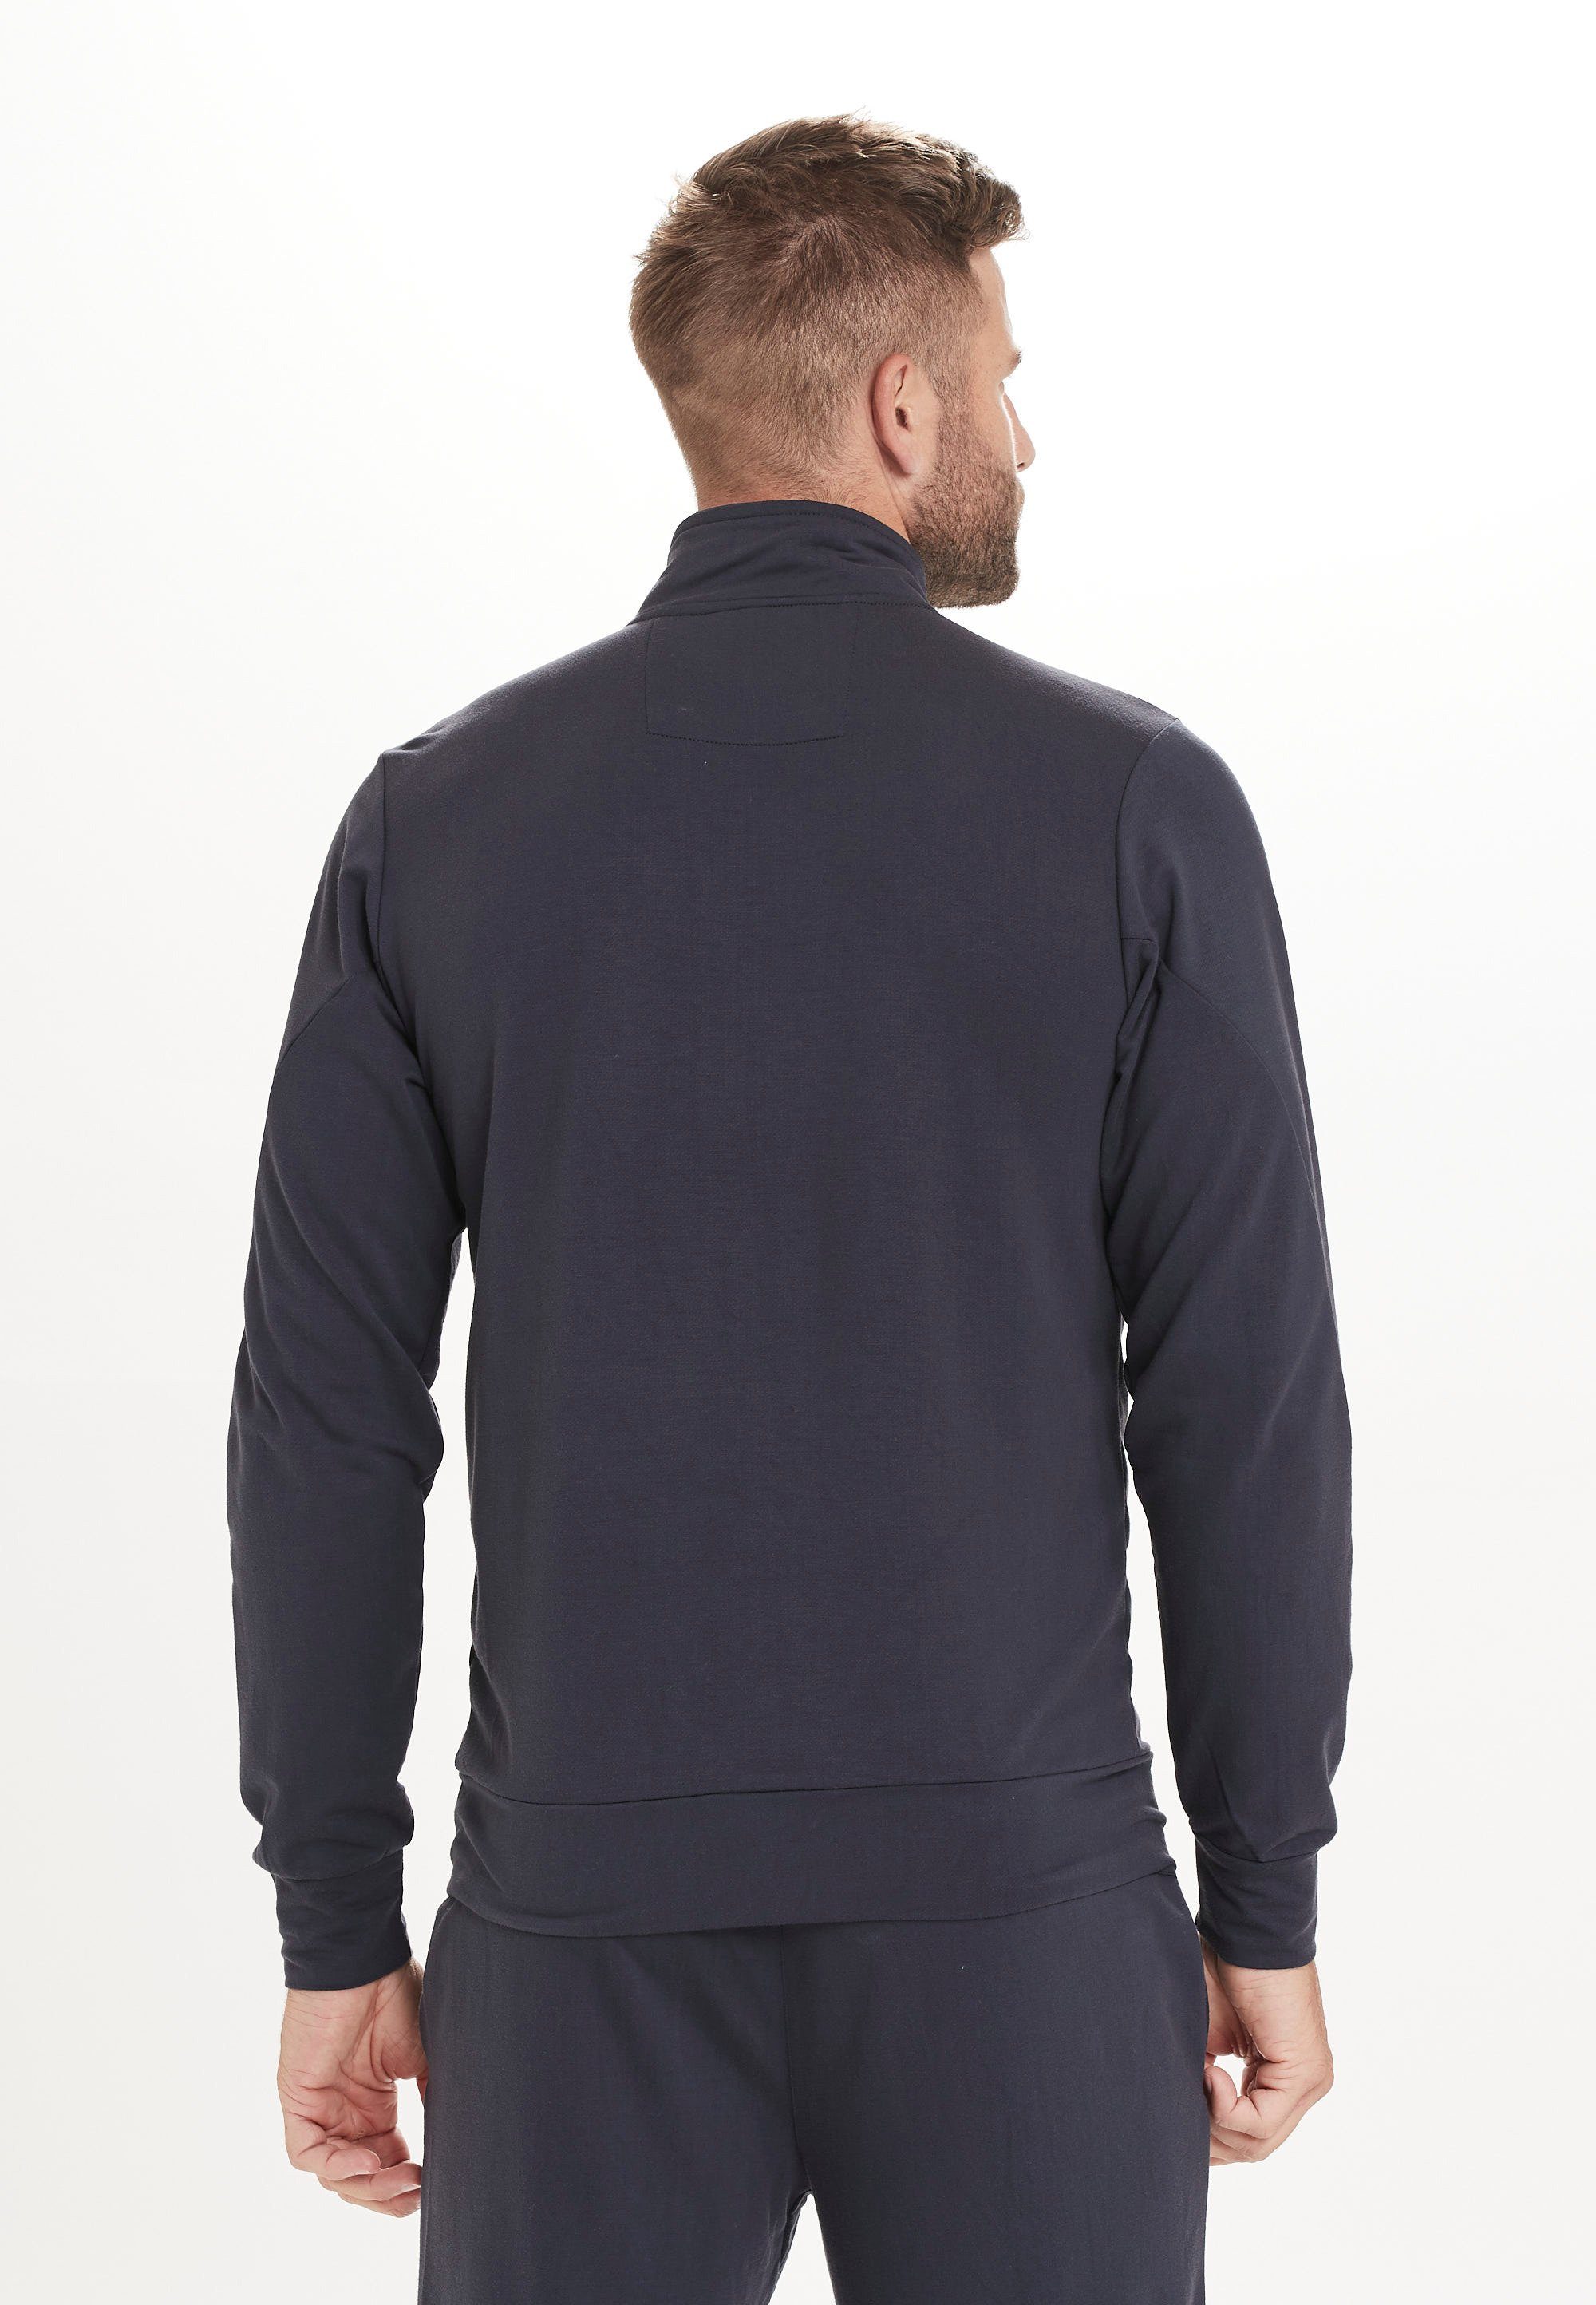 Seitentaschen dunkelblau Loweer Sweatshirt praktischen ENDURANCE mit